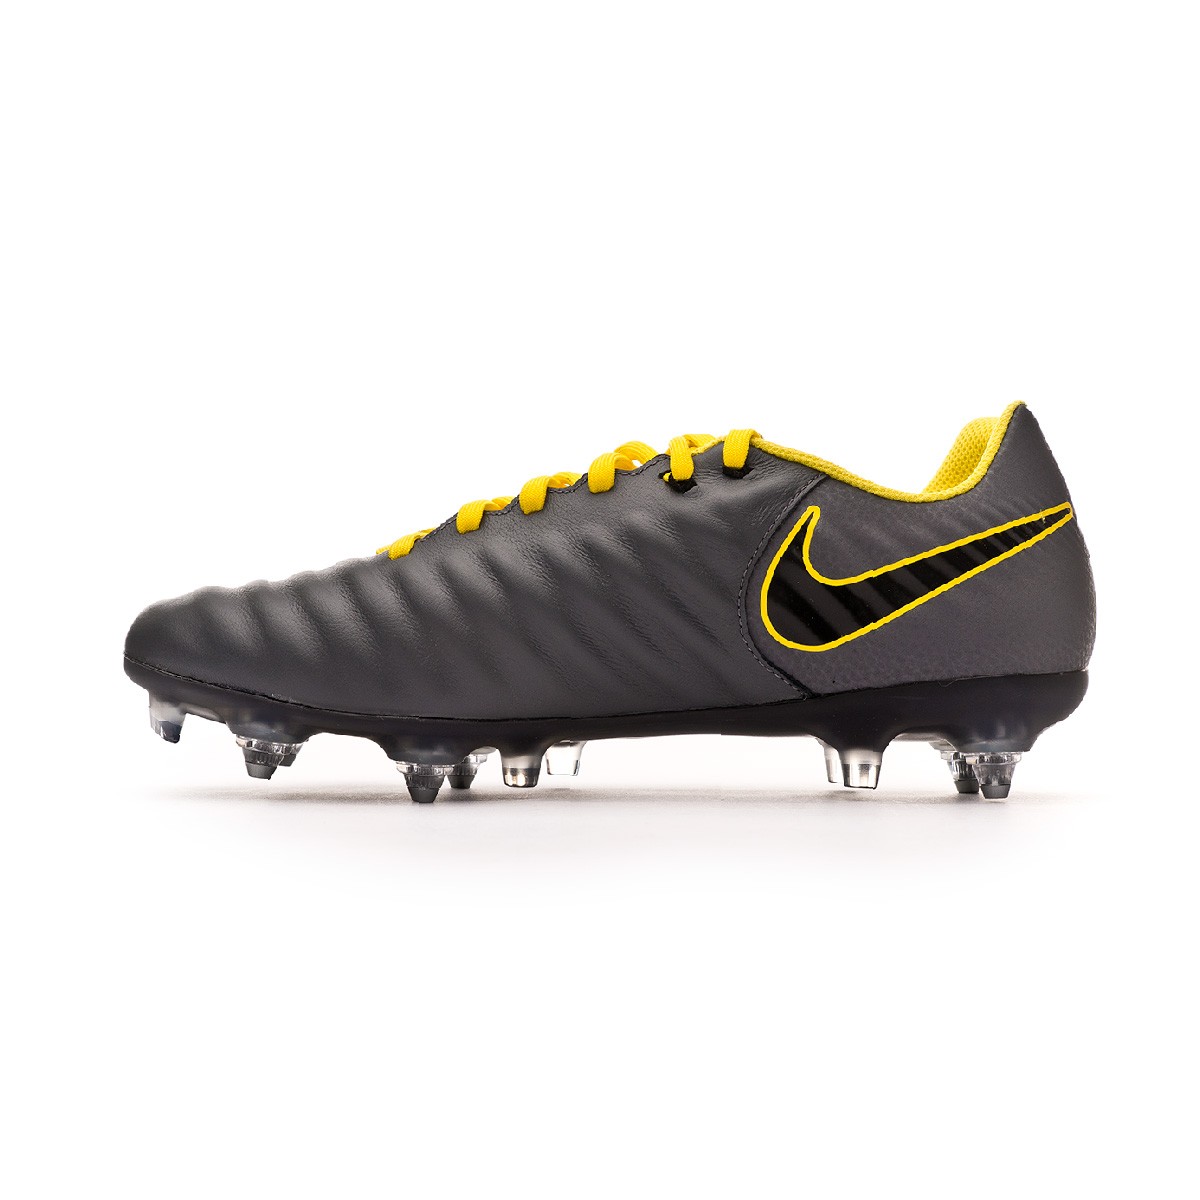 Zapatos de fútbol Nike Tiempo Legend VII Academy SG-Pro ACC Dark  grey-Black-Optical yellow - Tienda de fútbol Fútbol Emotion